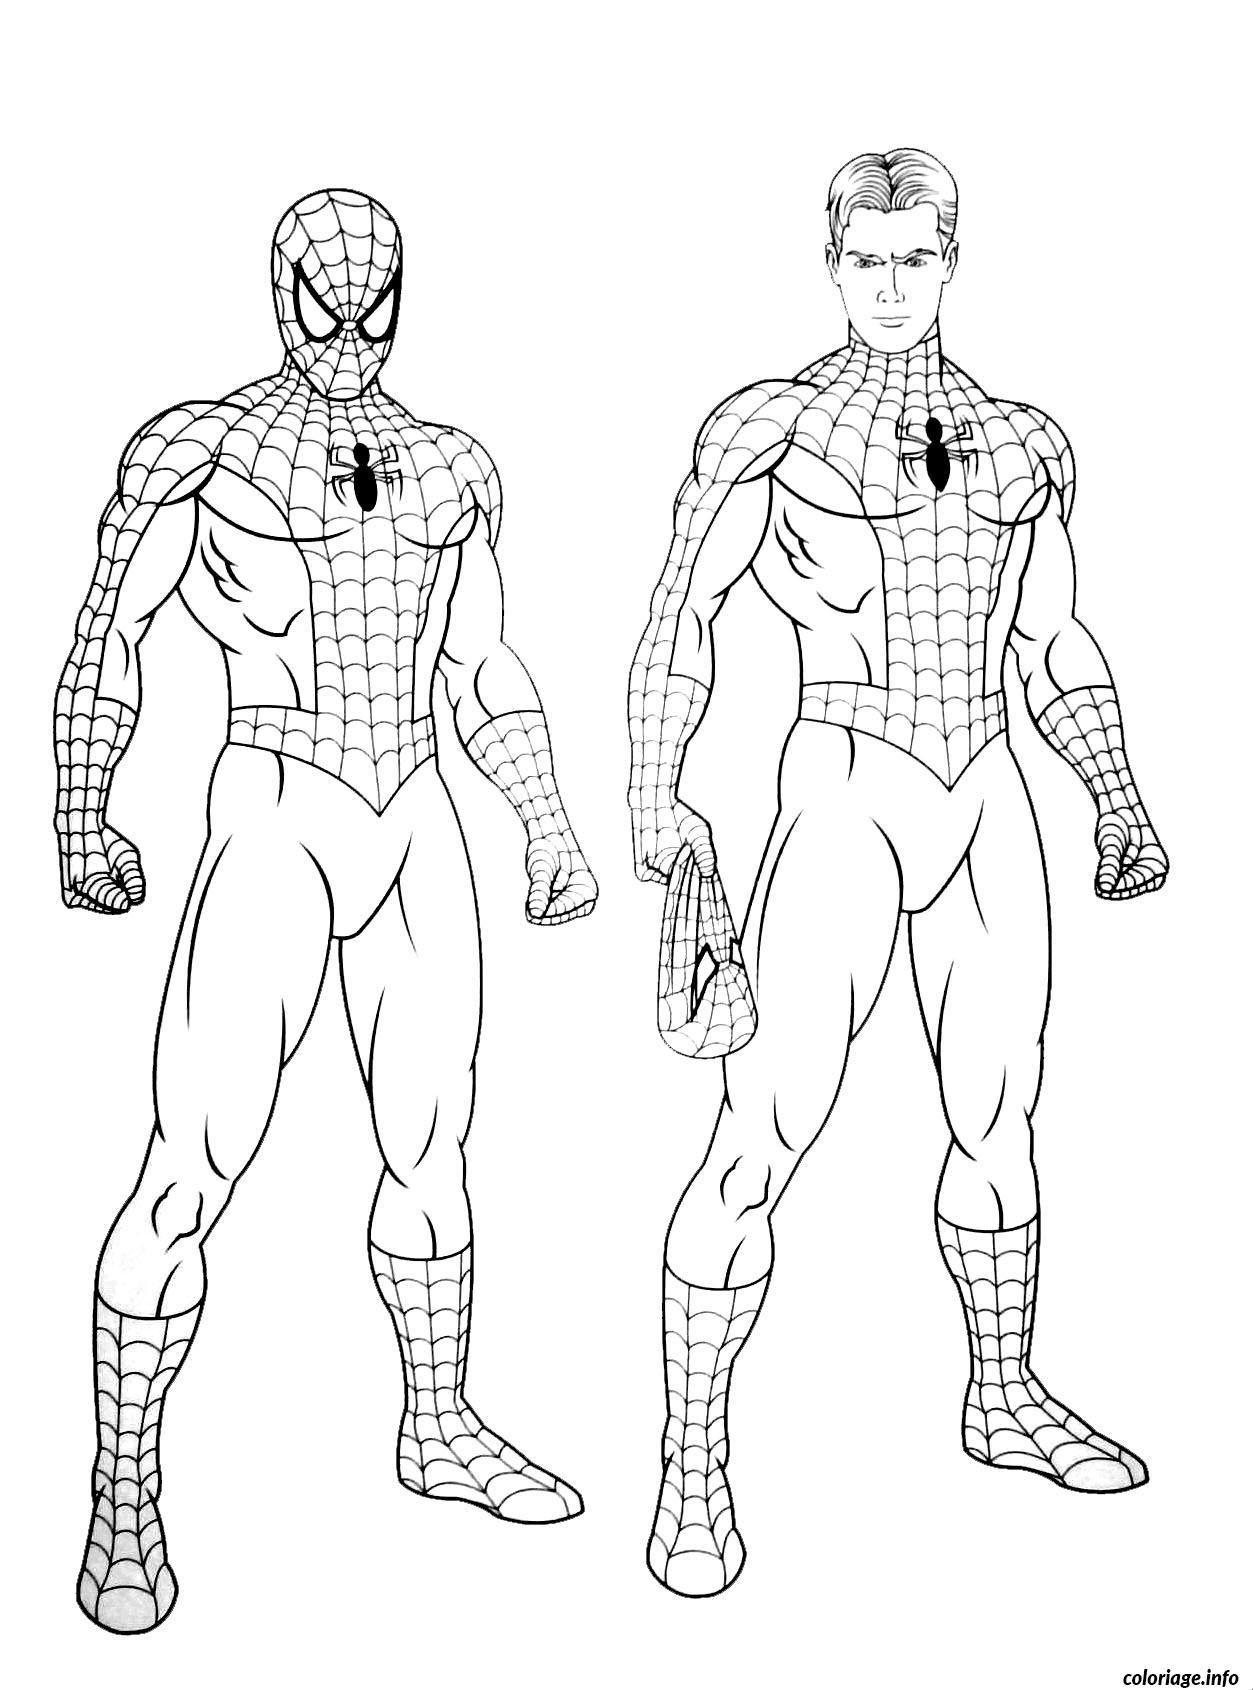 Coloriage Imprimer Spiderman Gratuit - Coloriage Imprimer avec Coloriage Gratuit Spiderman 